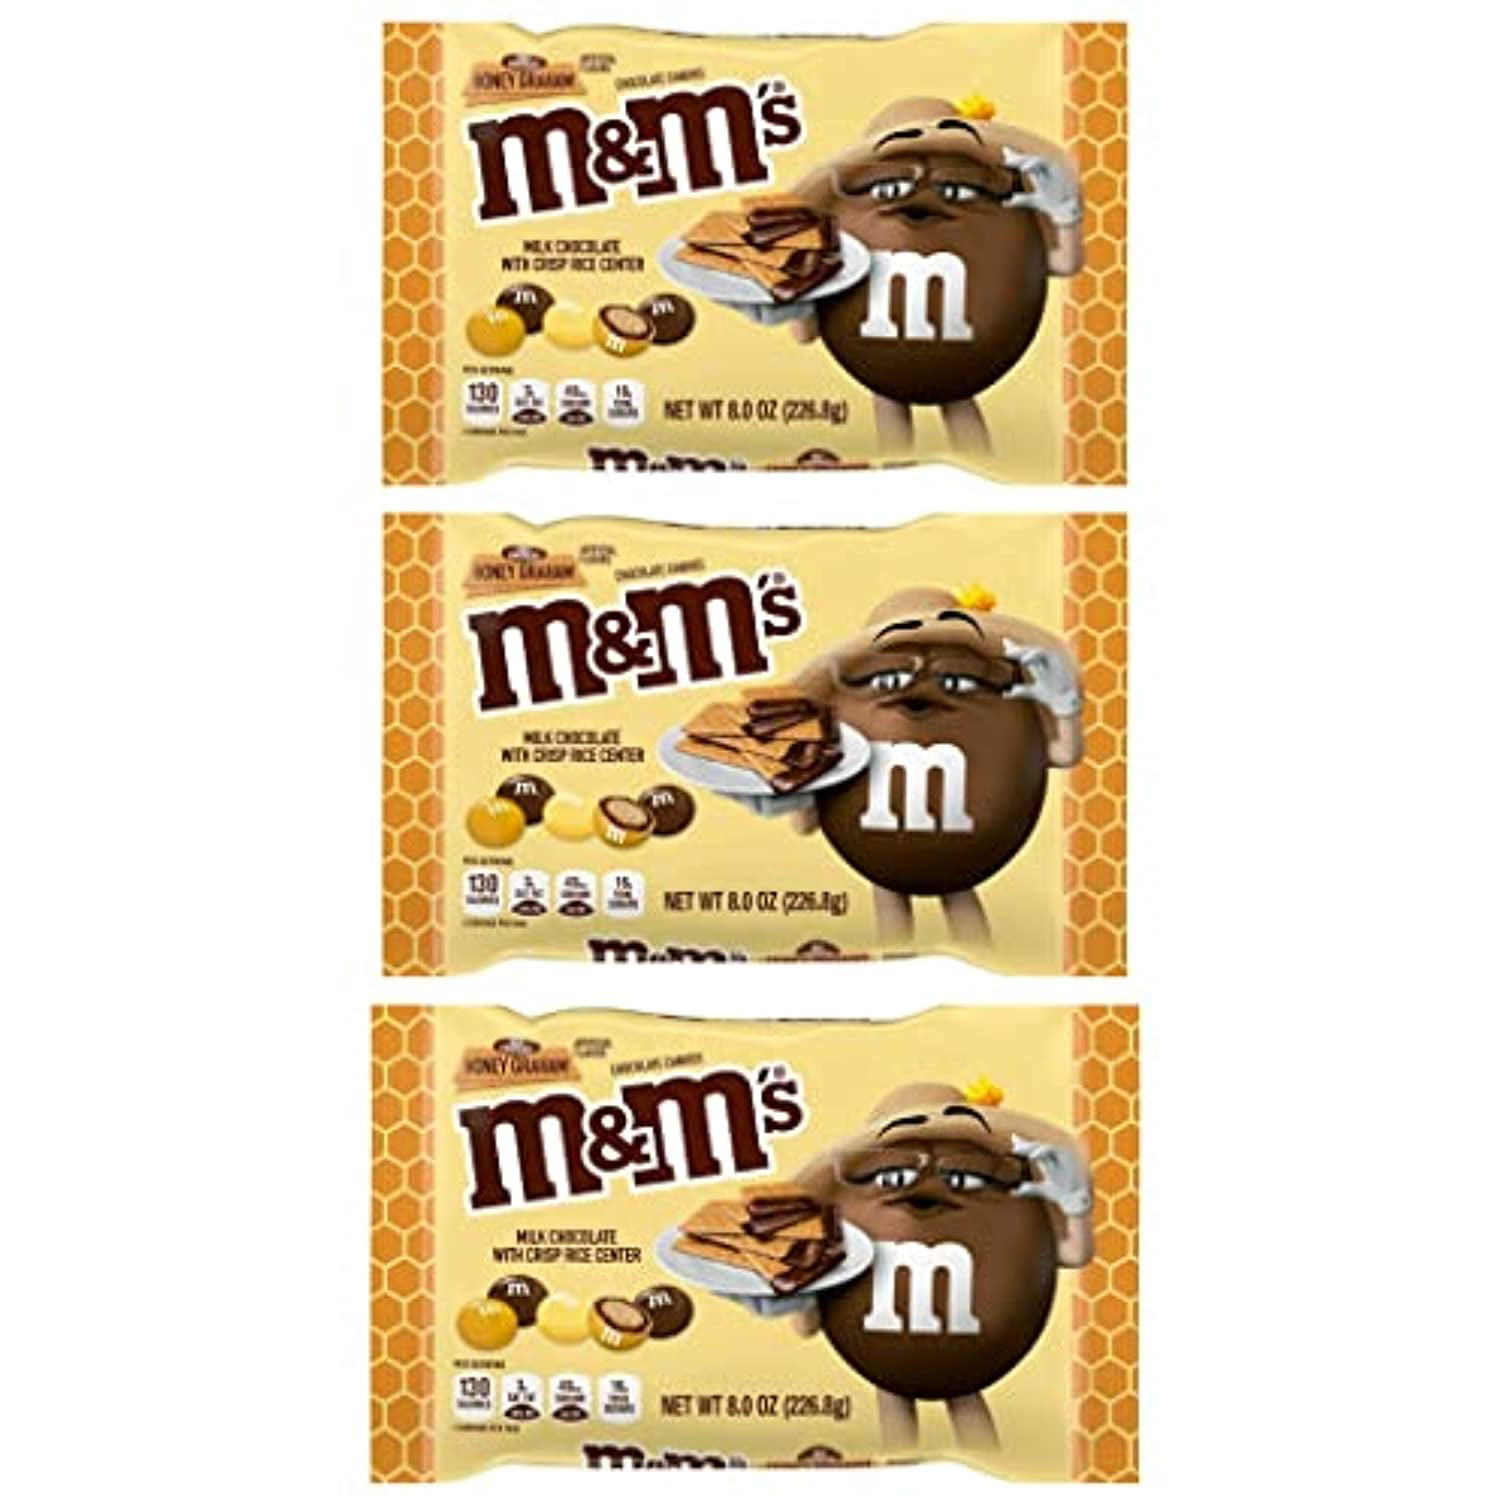 REVIEW: Milk Chocolate Honey Graham M&M's - The Impulsive Buy